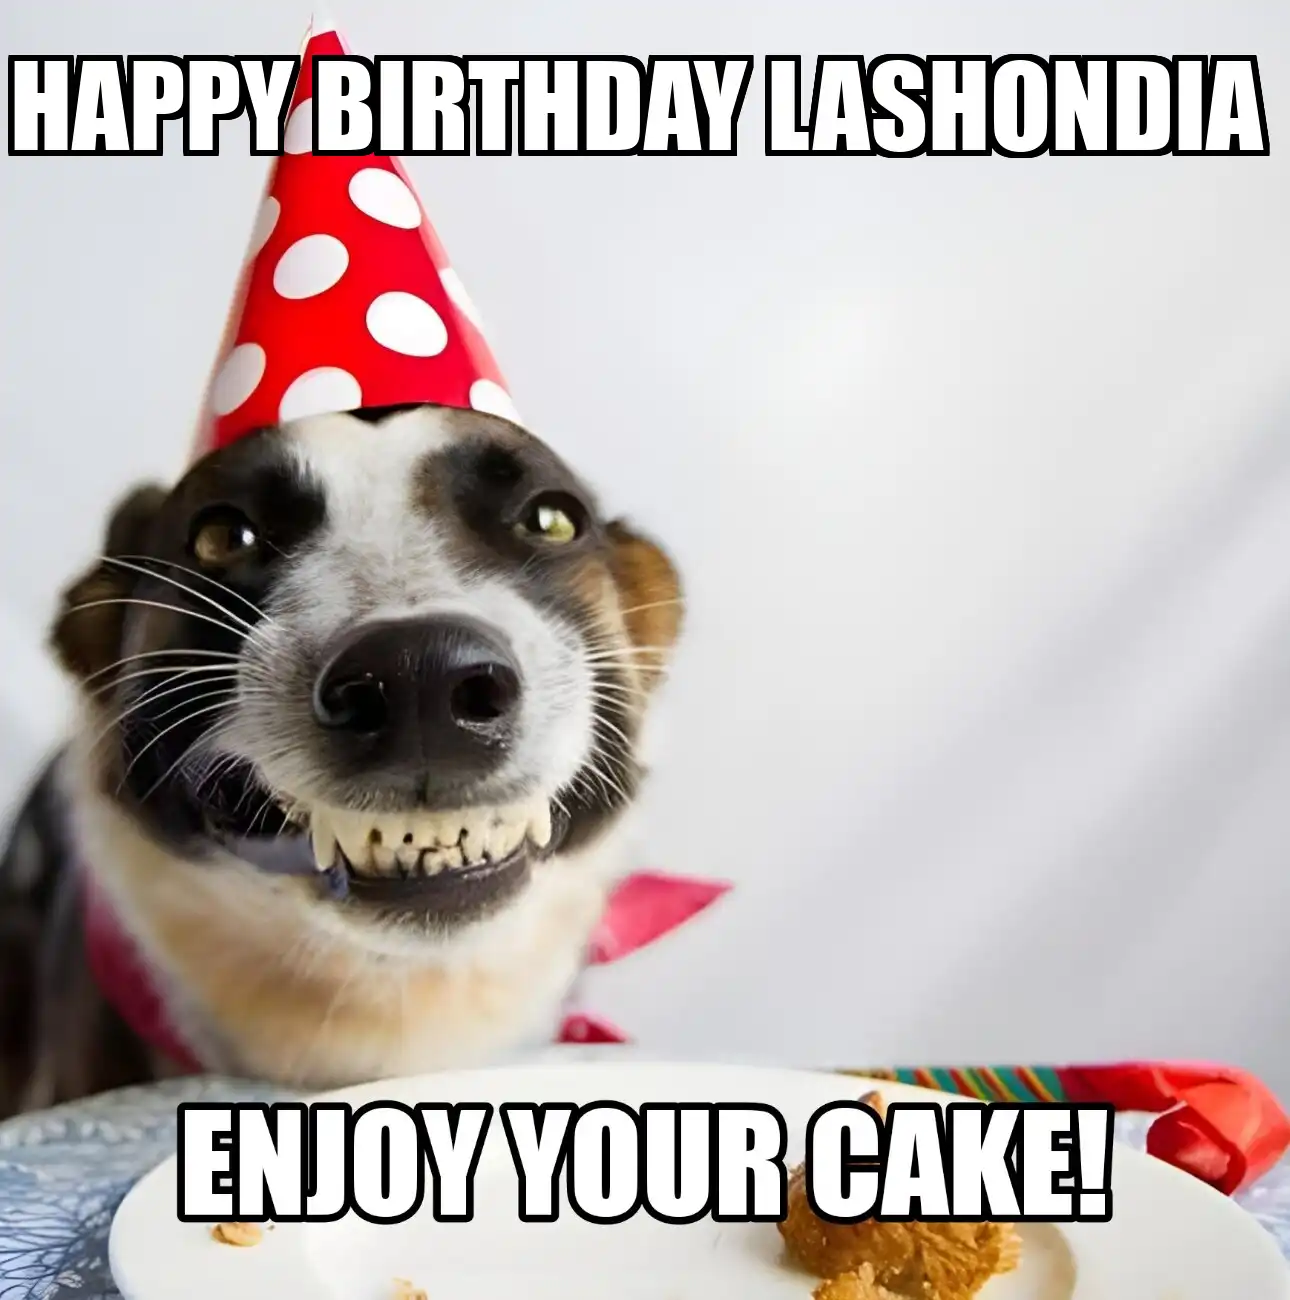 Happy Birthday Lashondia Enjoy Your Cake Dog Meme